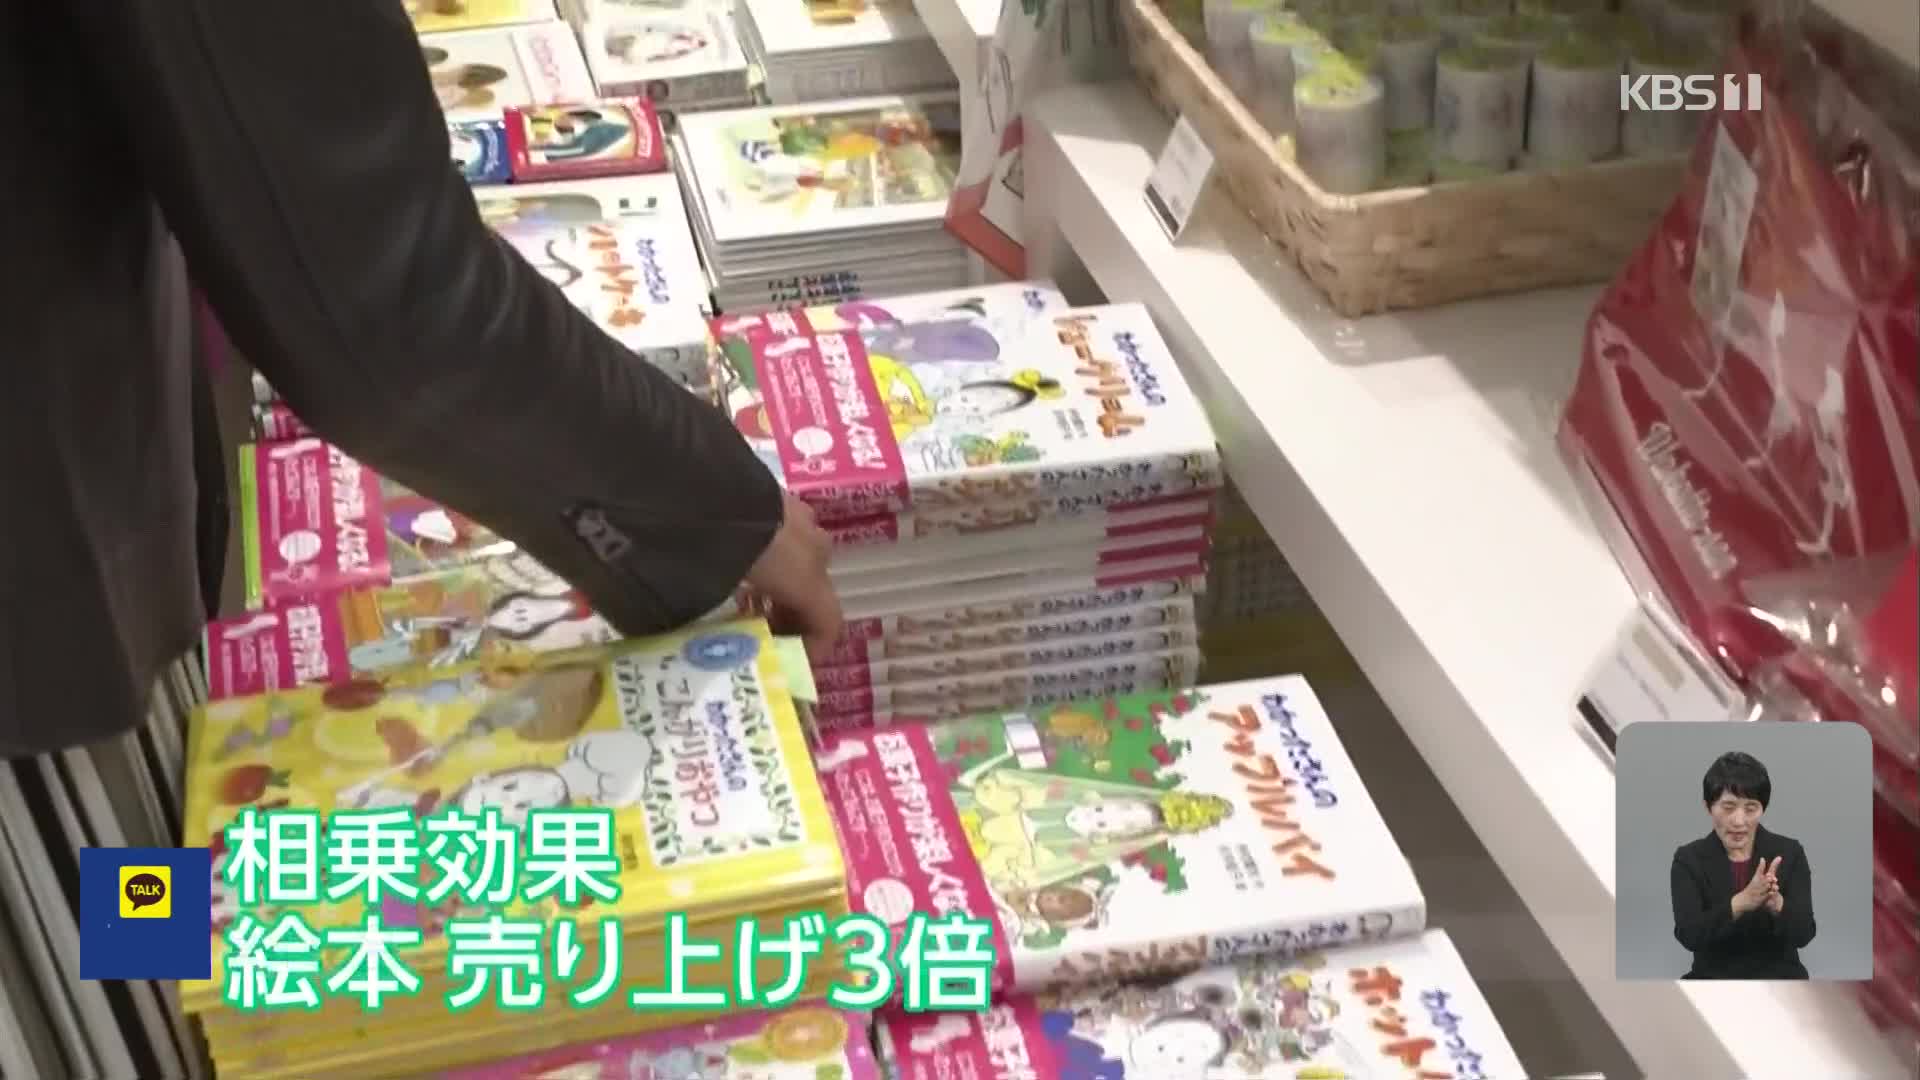 일본, 아동 도서에 매료된 성인들…관련 상품도 인기